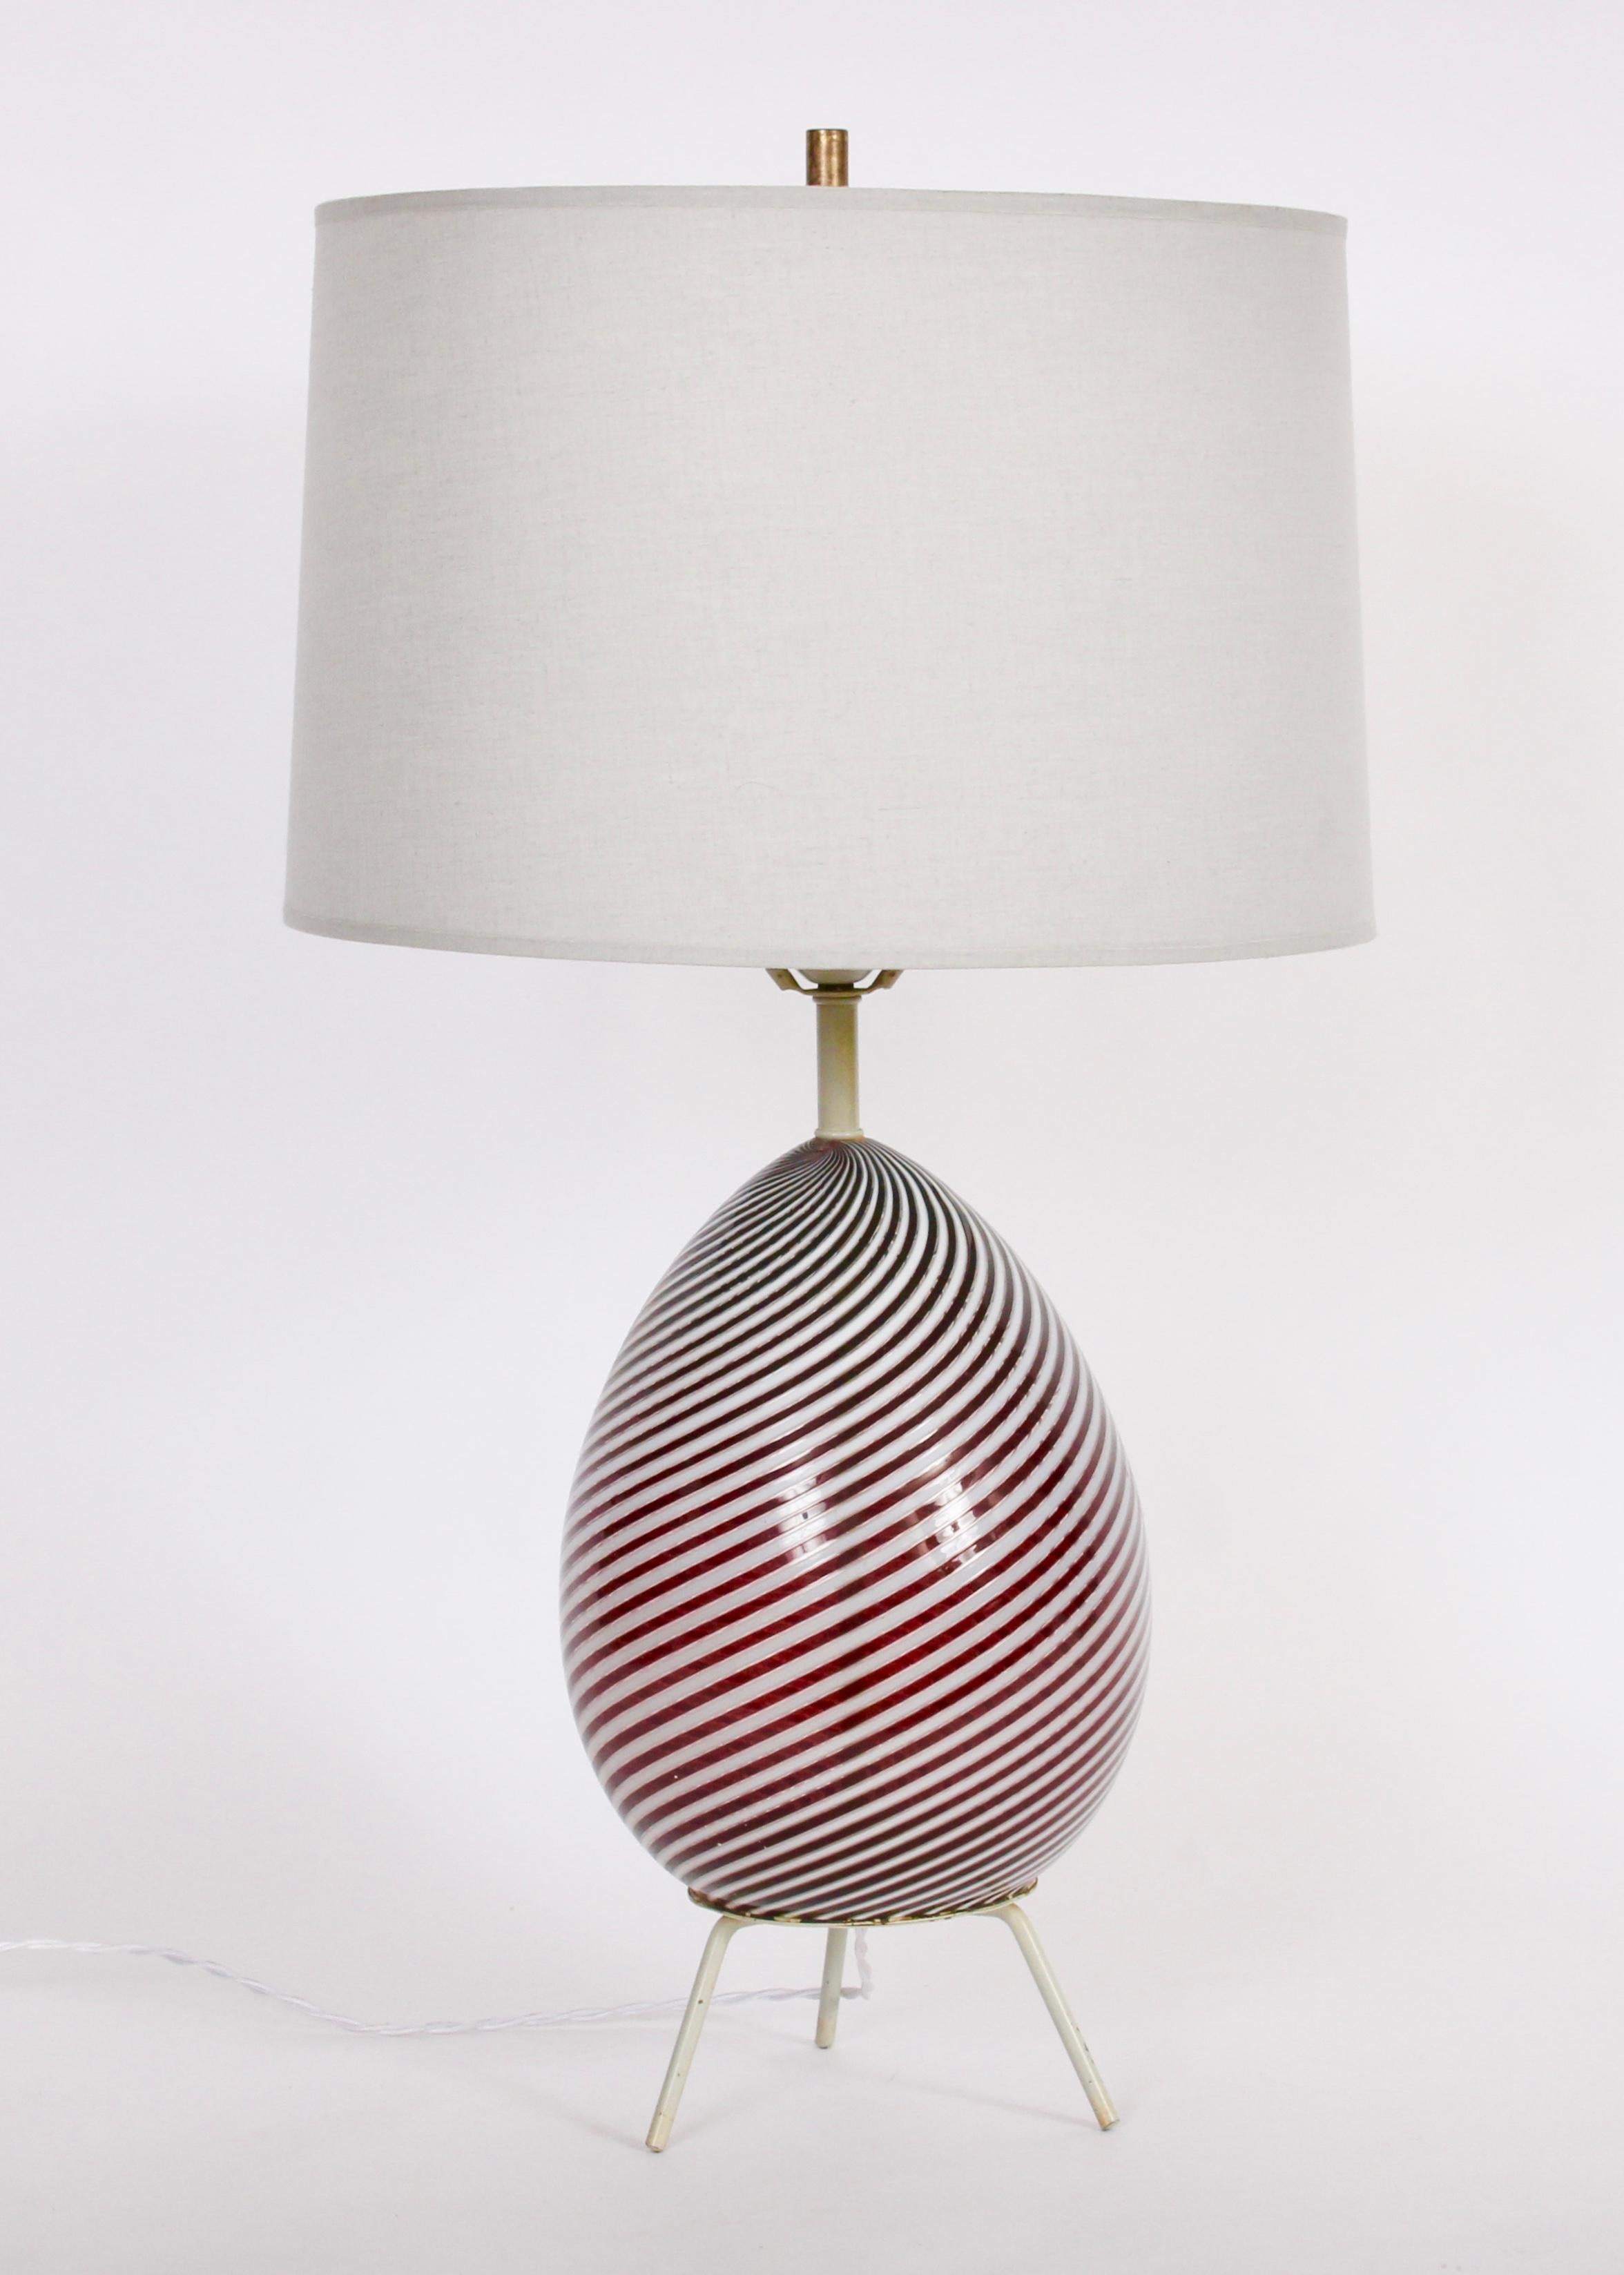 Lampe de table en verre de Murano Dino Martens pour Aureliano Toso, années 1960, couleur canneberge profonde et tourbillon blanc opaque.  Avec une forme d'œuf fabriquée à la main en verre translucide avec des rayures diagonales parallèles en